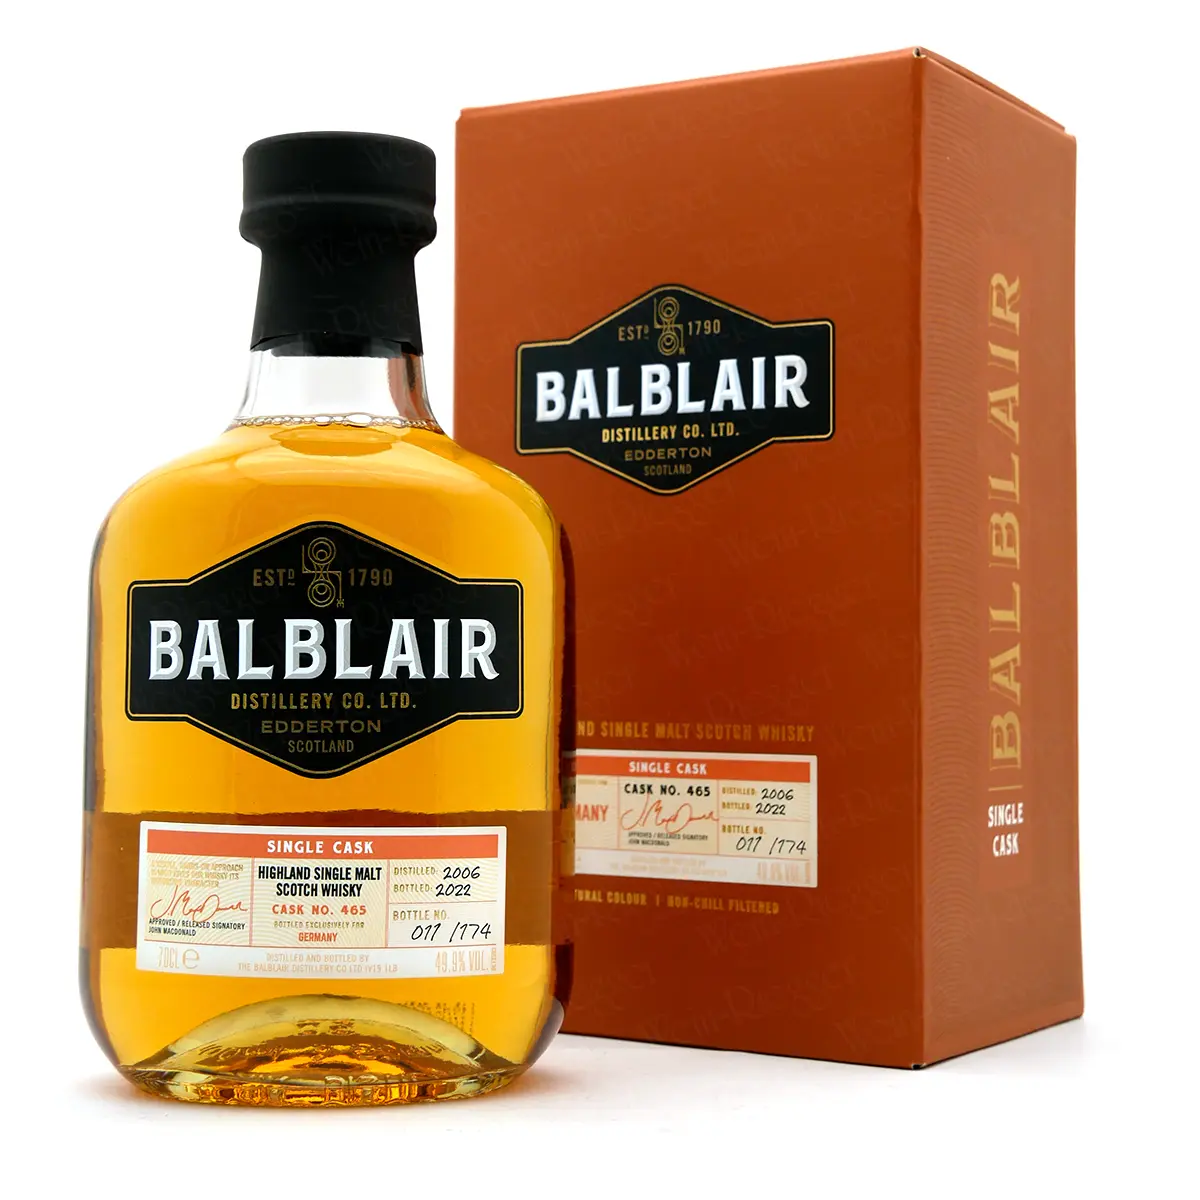 Balblair 2006/2022 Single Cask No. 465